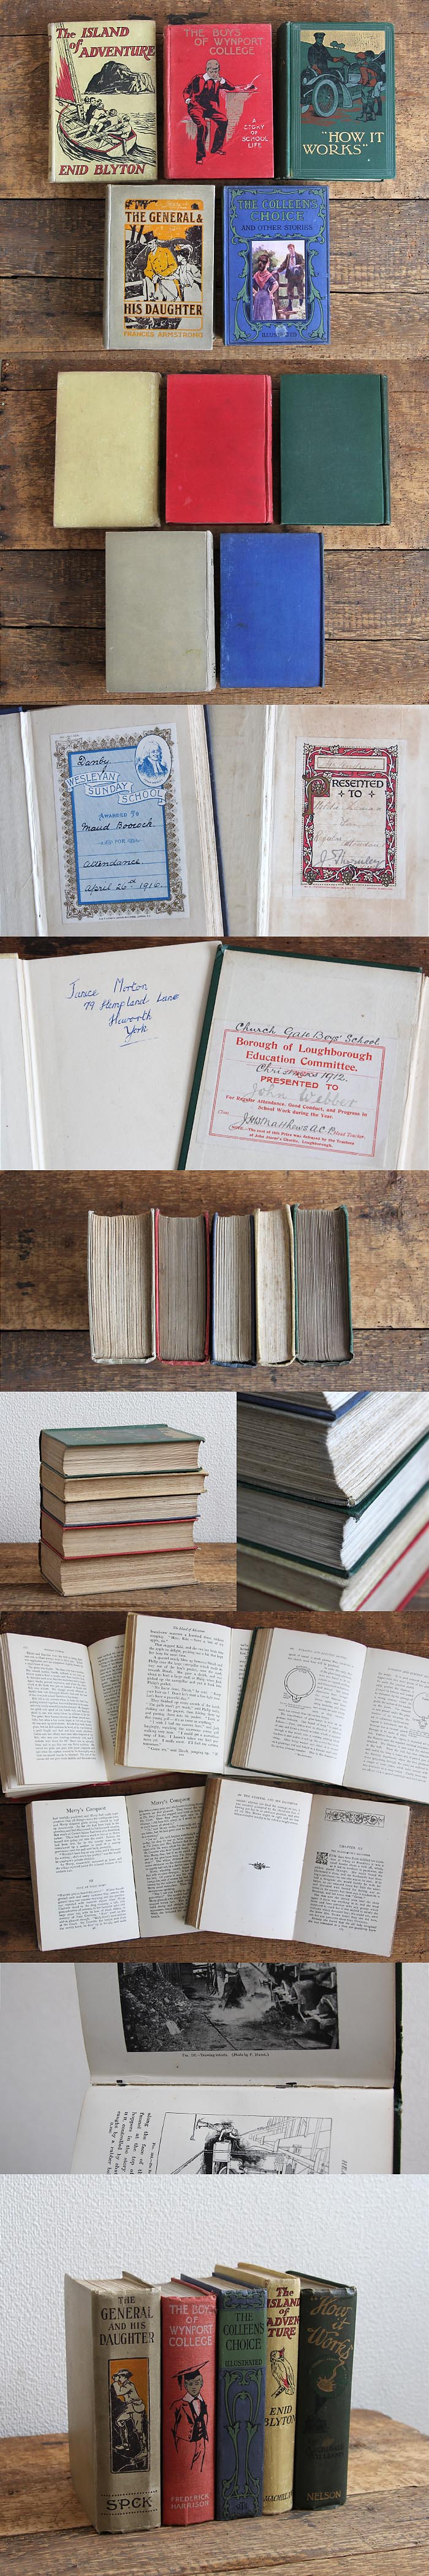 イギリス アンティークブック 5冊セット 古書 インテリア雑貨 洋書 ディスプレイ「雰囲気パーフェクト」V-755